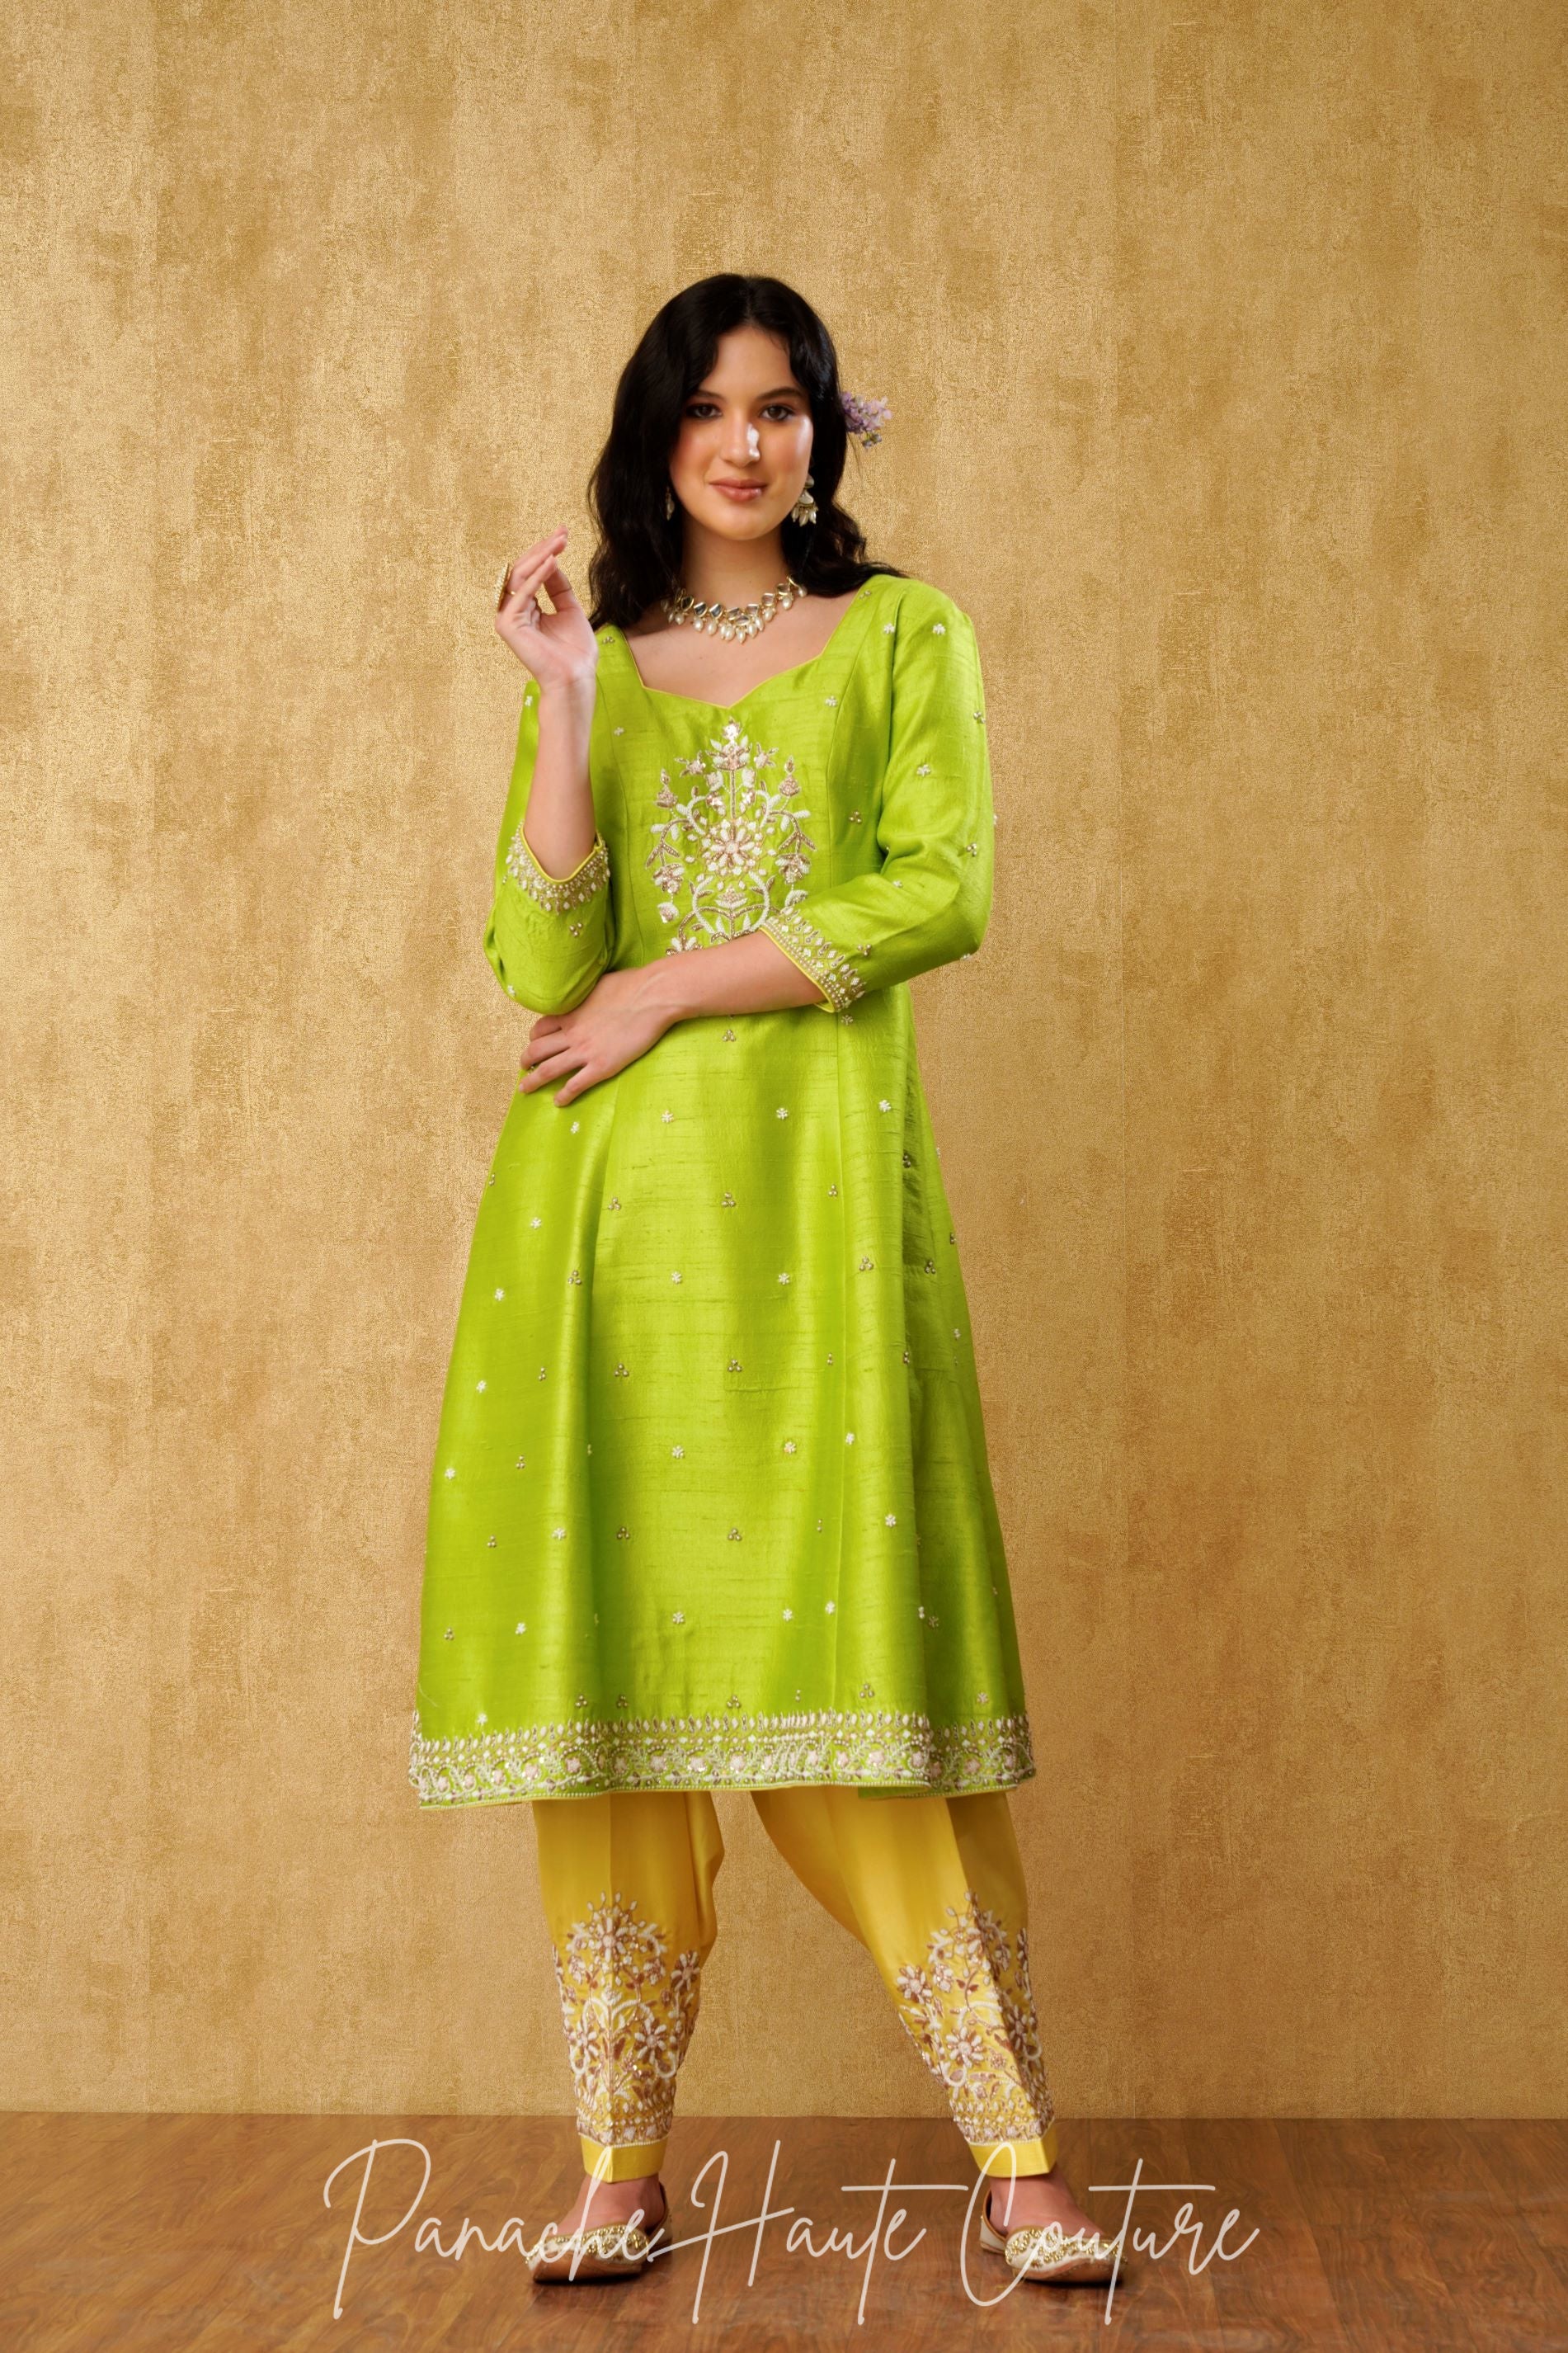 Yellow Punjabi Suit Collection // Top 2021 Special Yellow Colour New Punjabi  Salwar Kameez Designs - YouTube